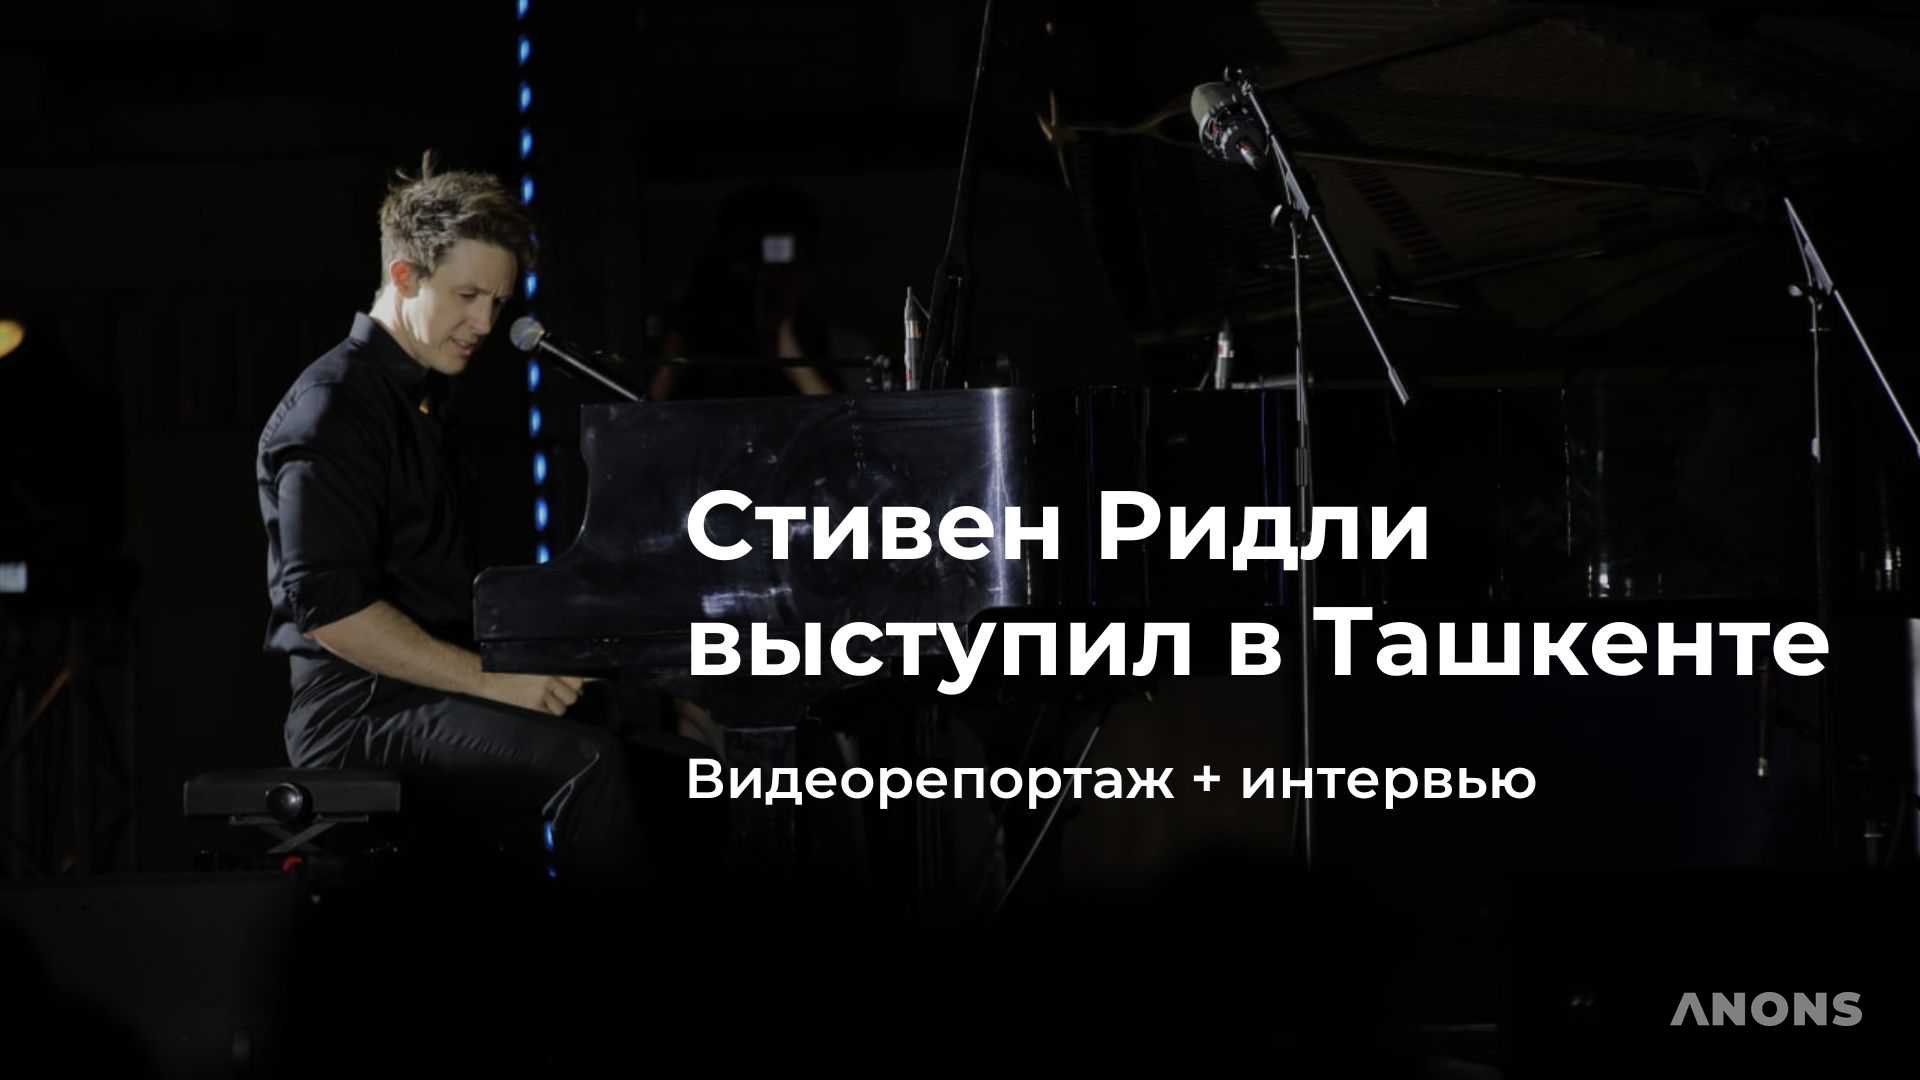 Видеорепортаж с концерта Стивена Ридли в Ташкенте + эксклюзивное интервью